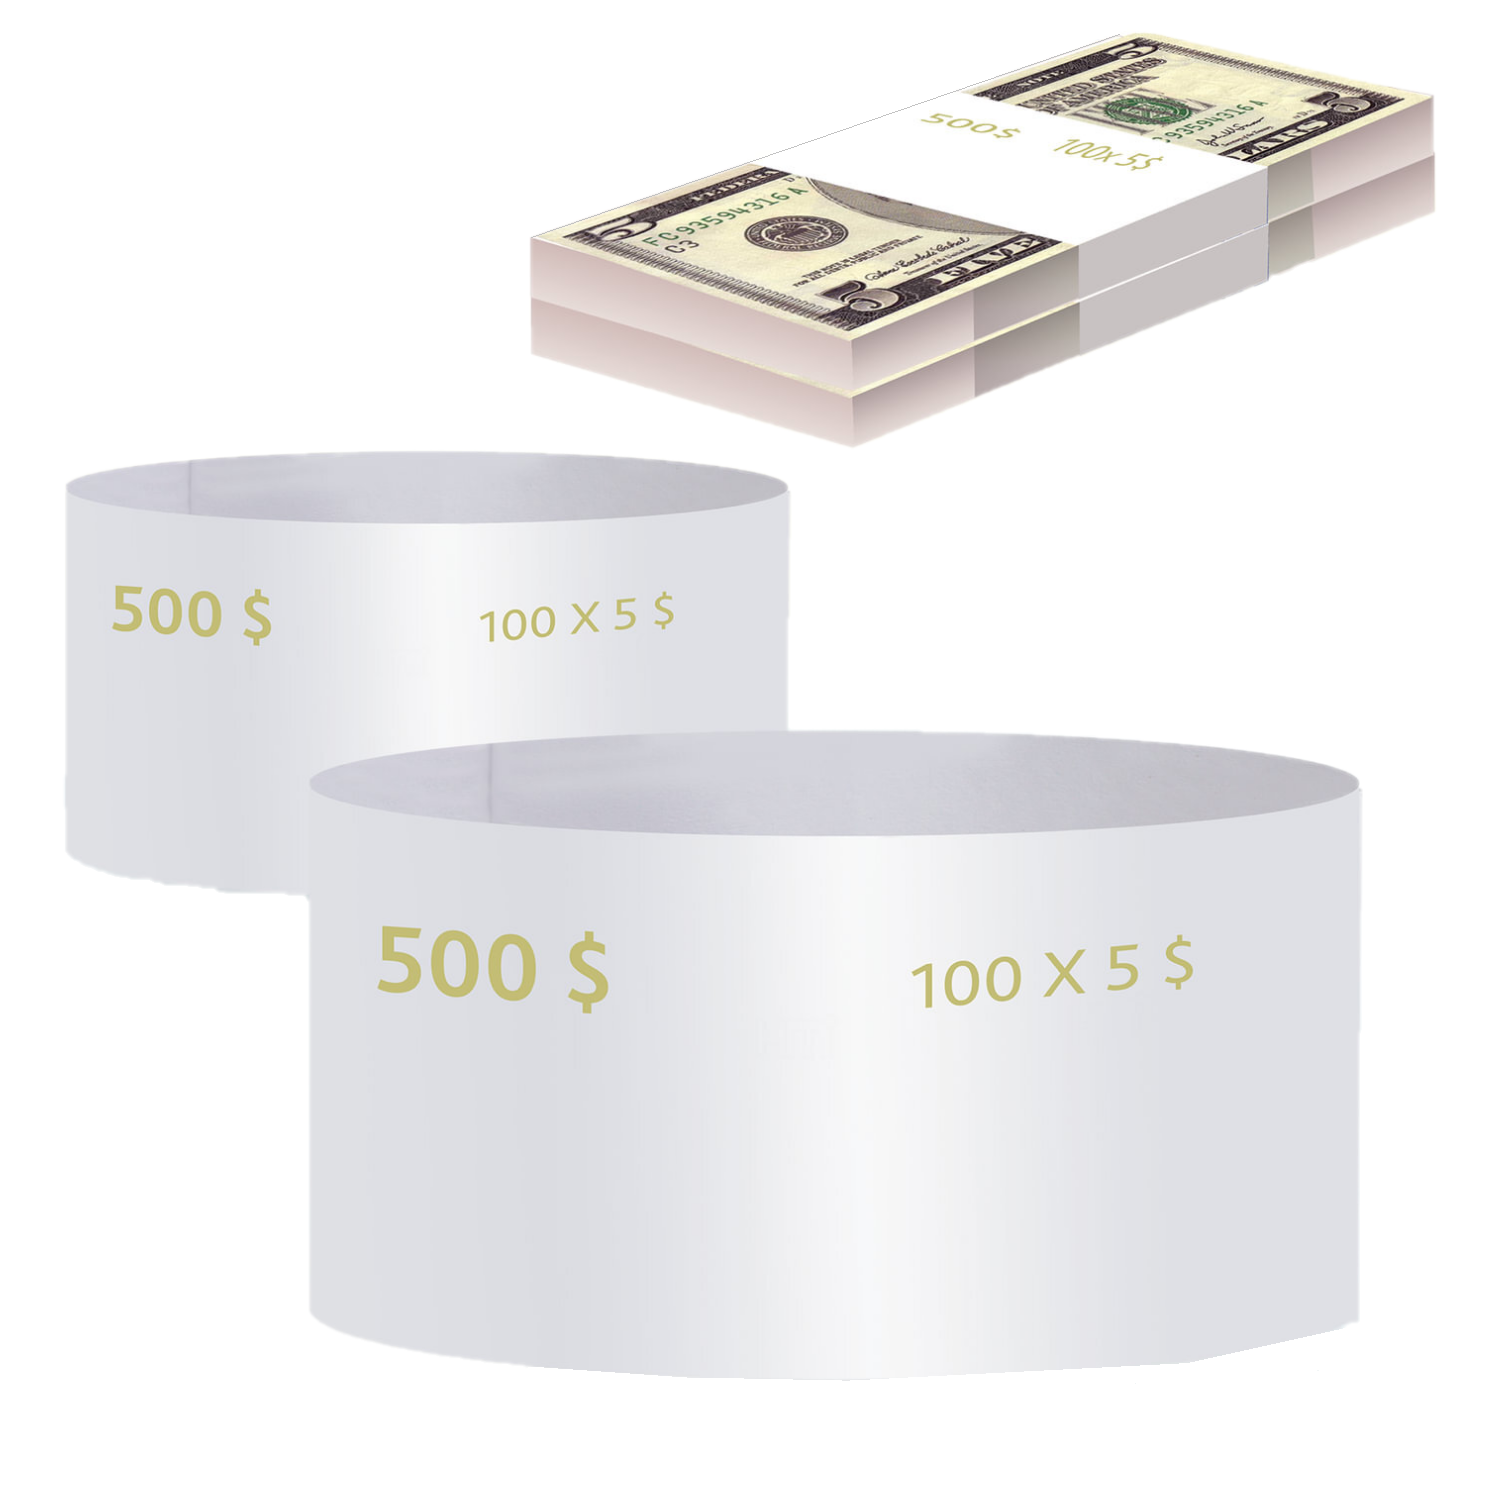 Бандероли кольцевые, комплект 500 шт., номинал 5 долларов